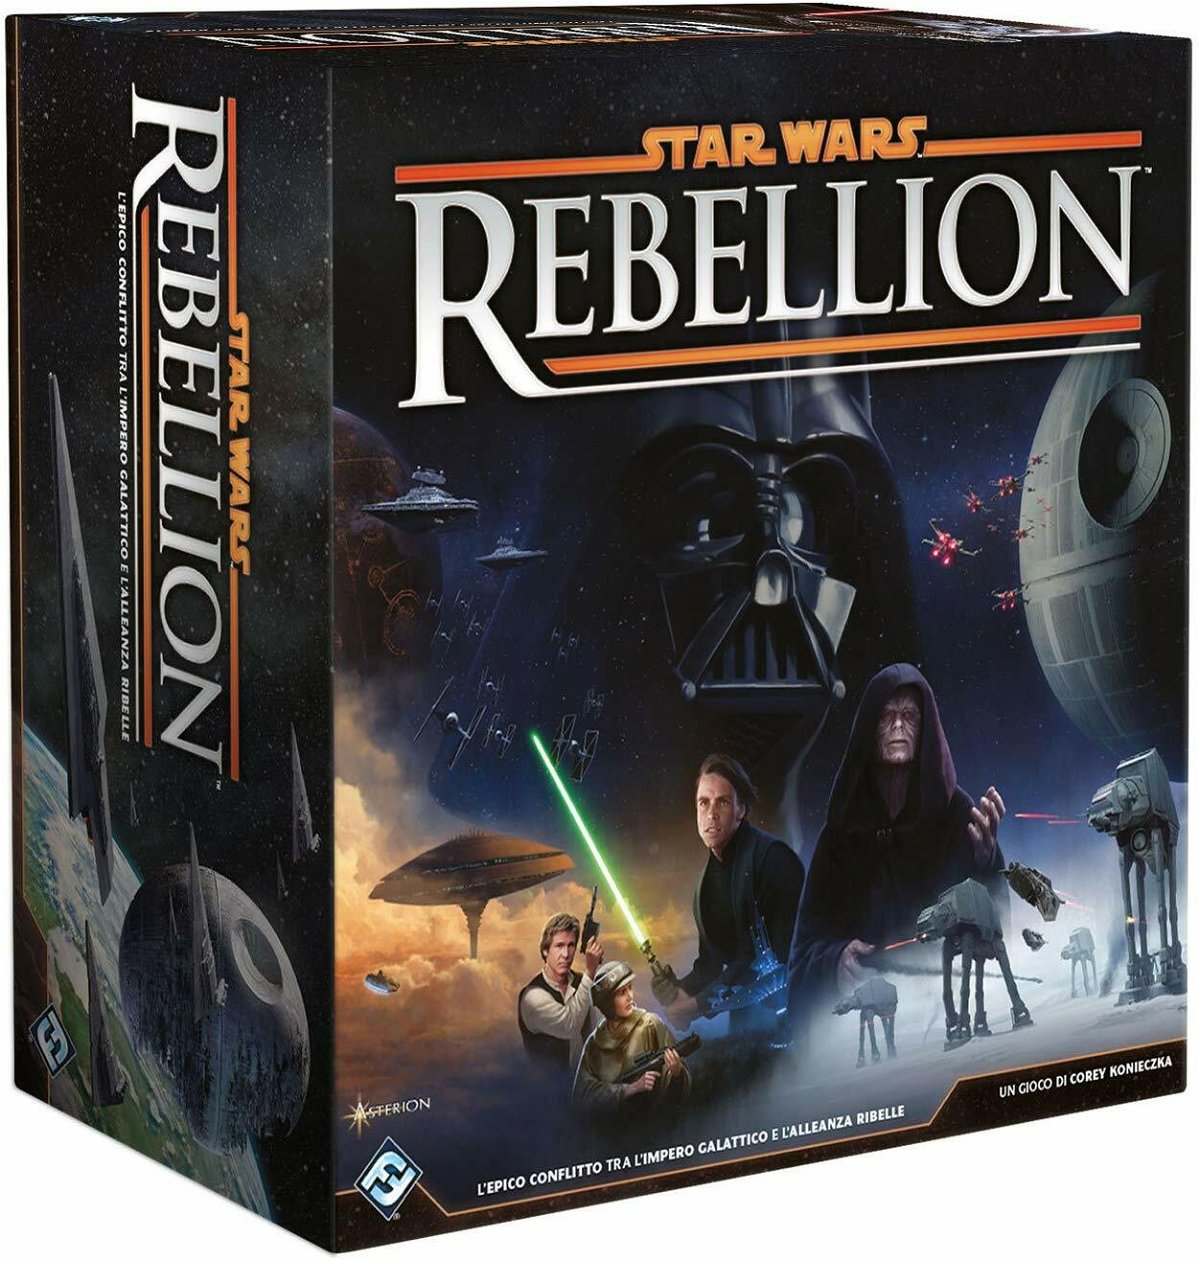 La scatola del gioco Star Wars Rebellion con immagini della trilogia classica